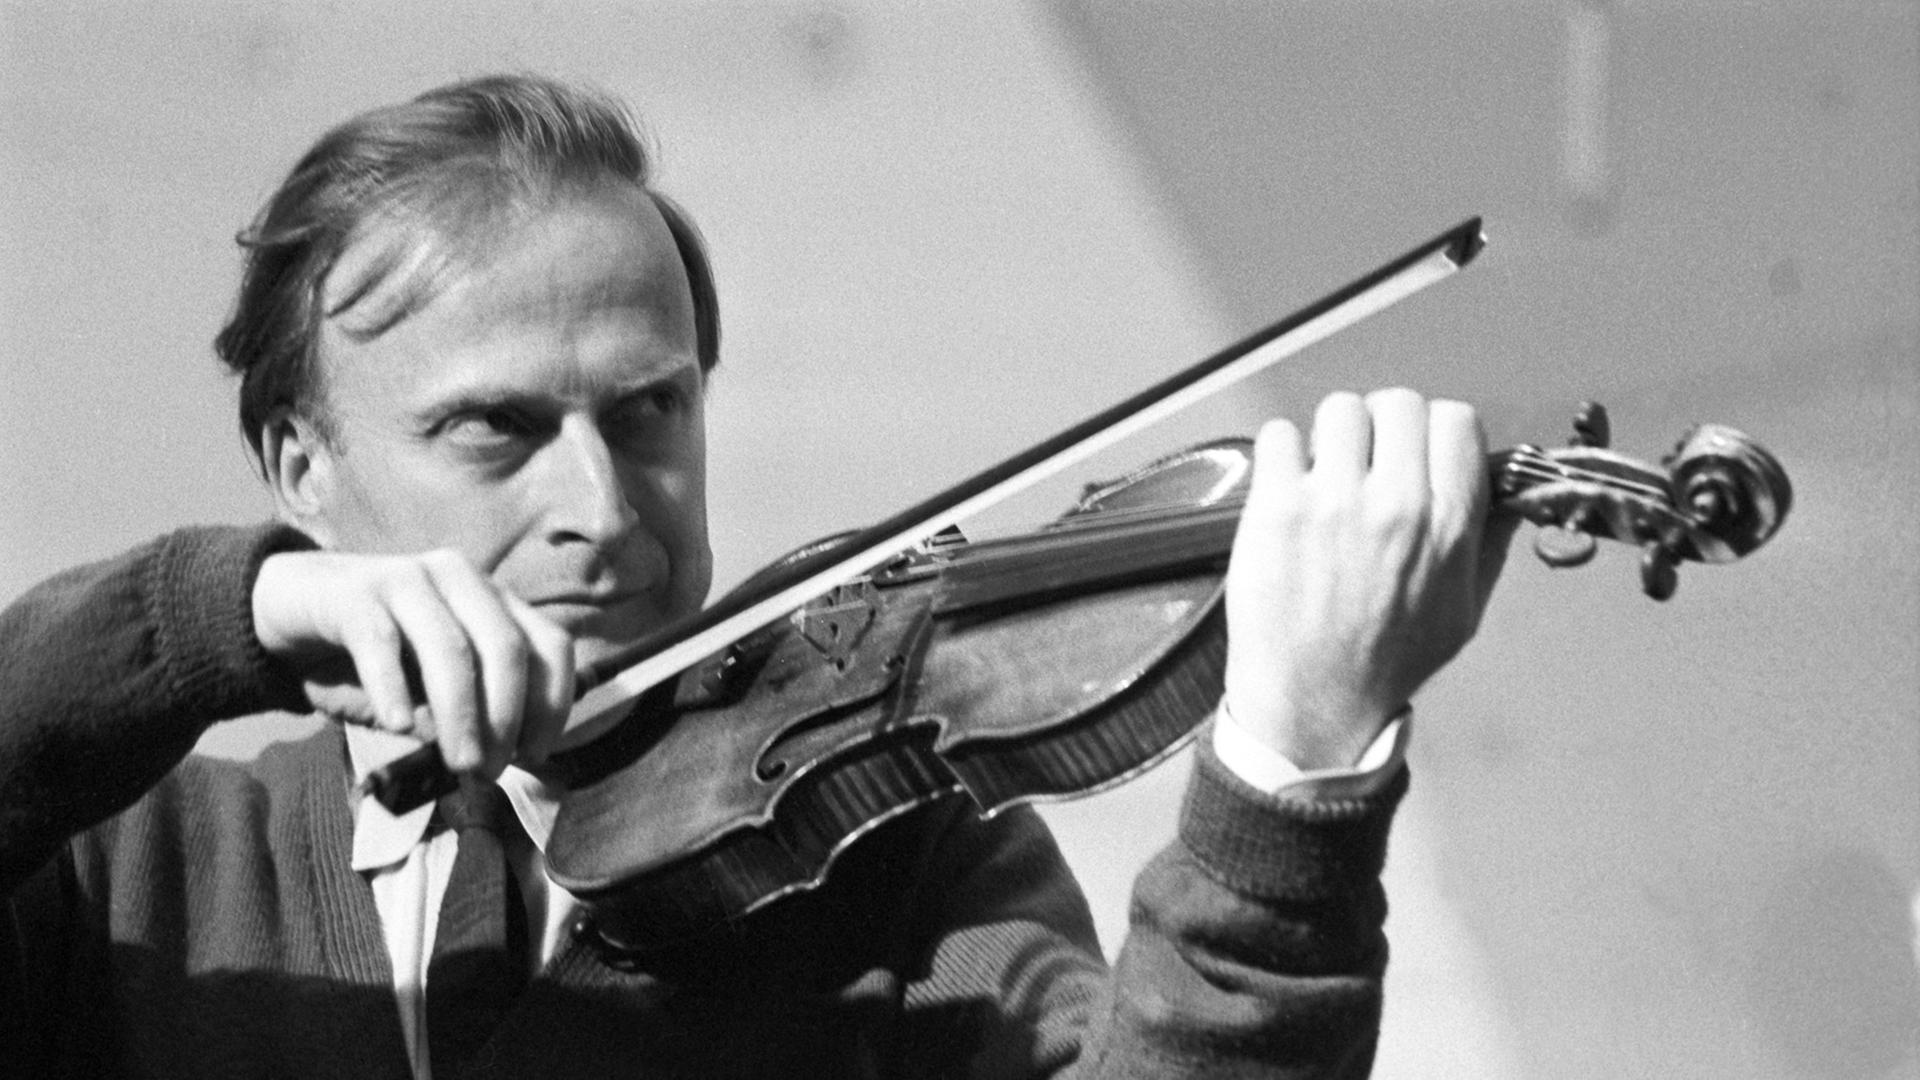 Der weltberühmte Geiger Yehudi Menuhin während eines Konzerts gemeinsam mit dem erweiterten Zürcher Kammerorchester am 30.03.1963 in der Jahrhunderthalle in Frankfurt-Höchst